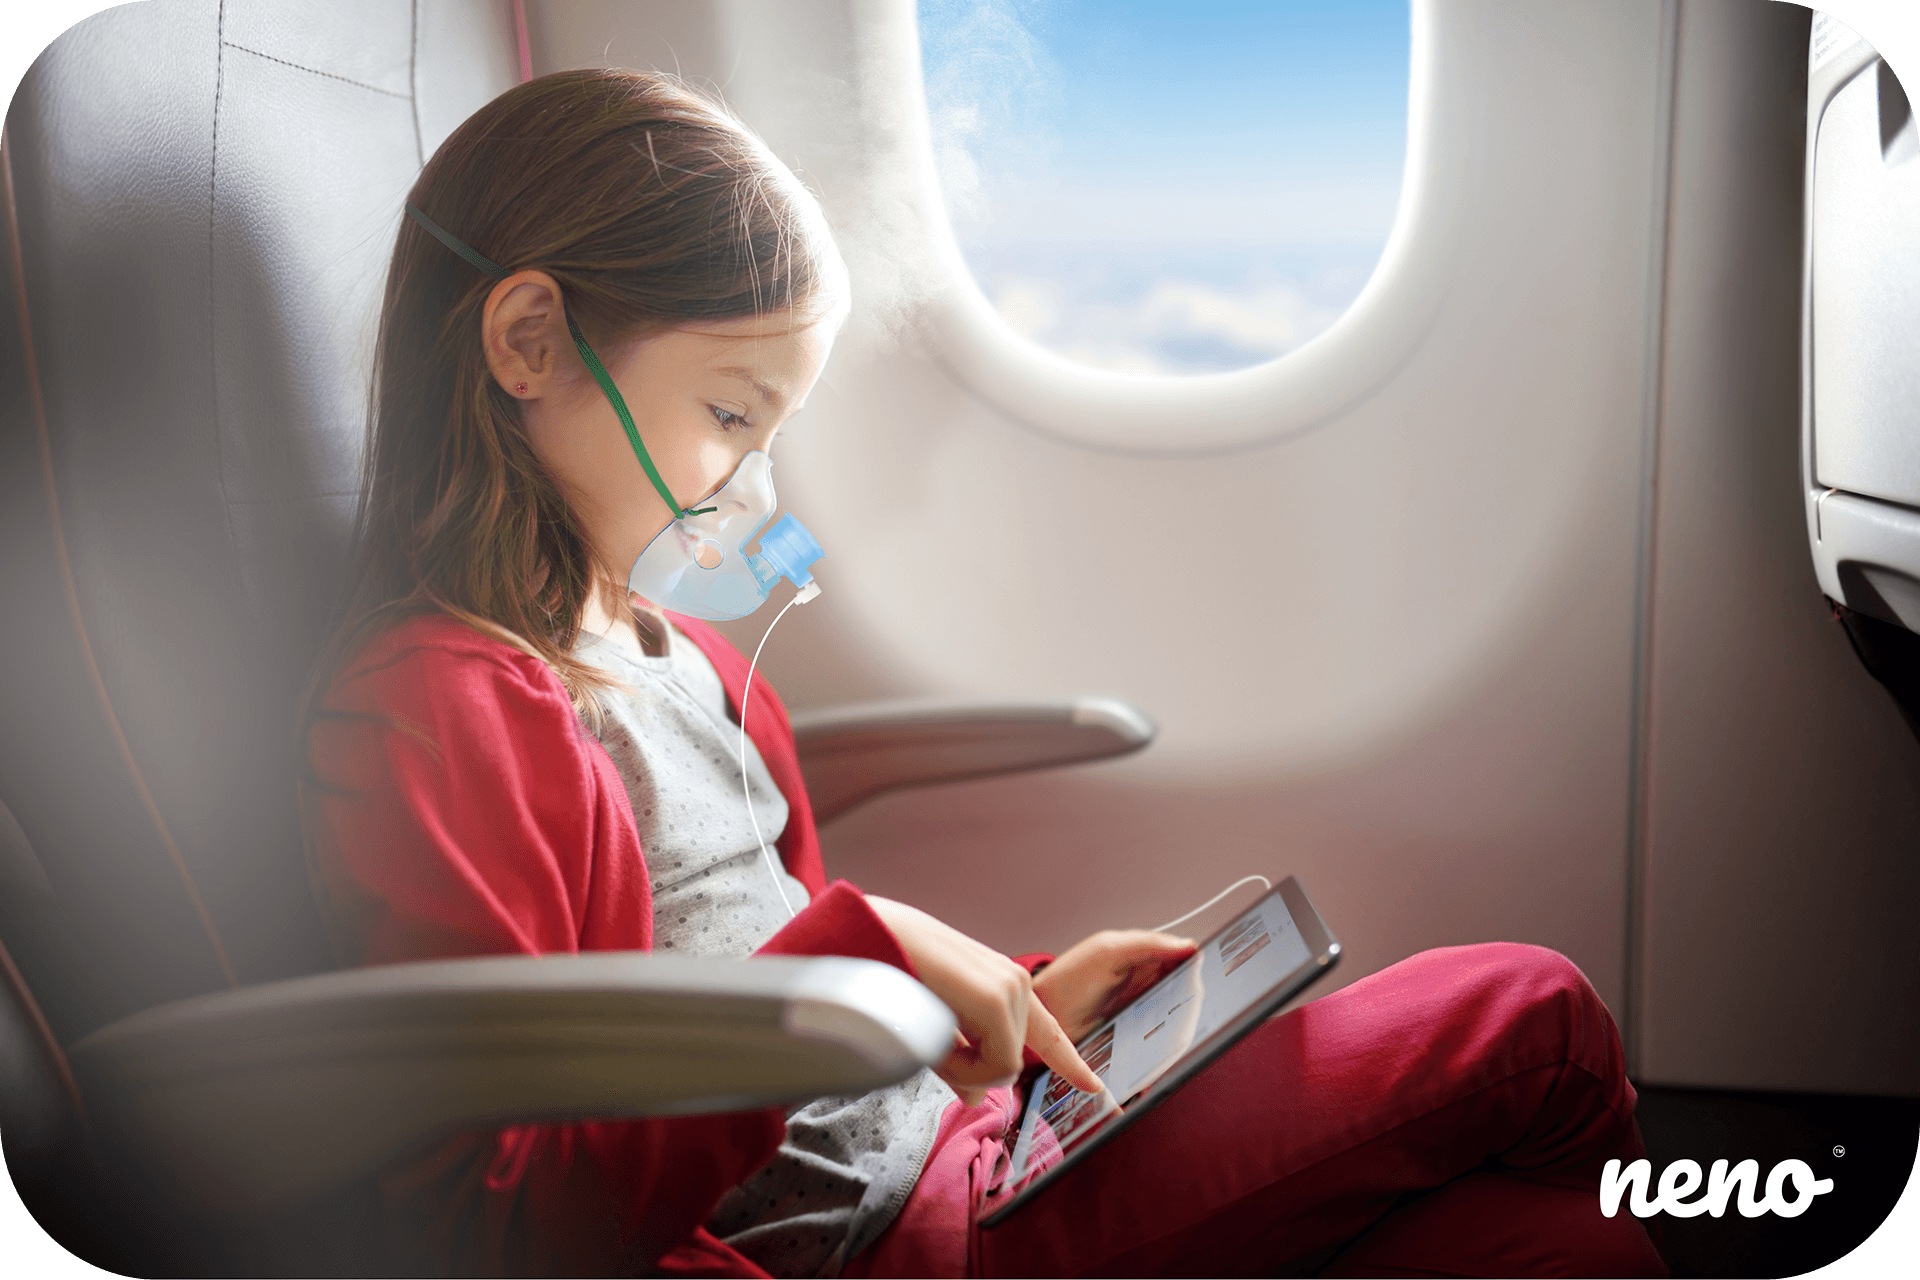 dziewczynka w samolocie używa neno bene